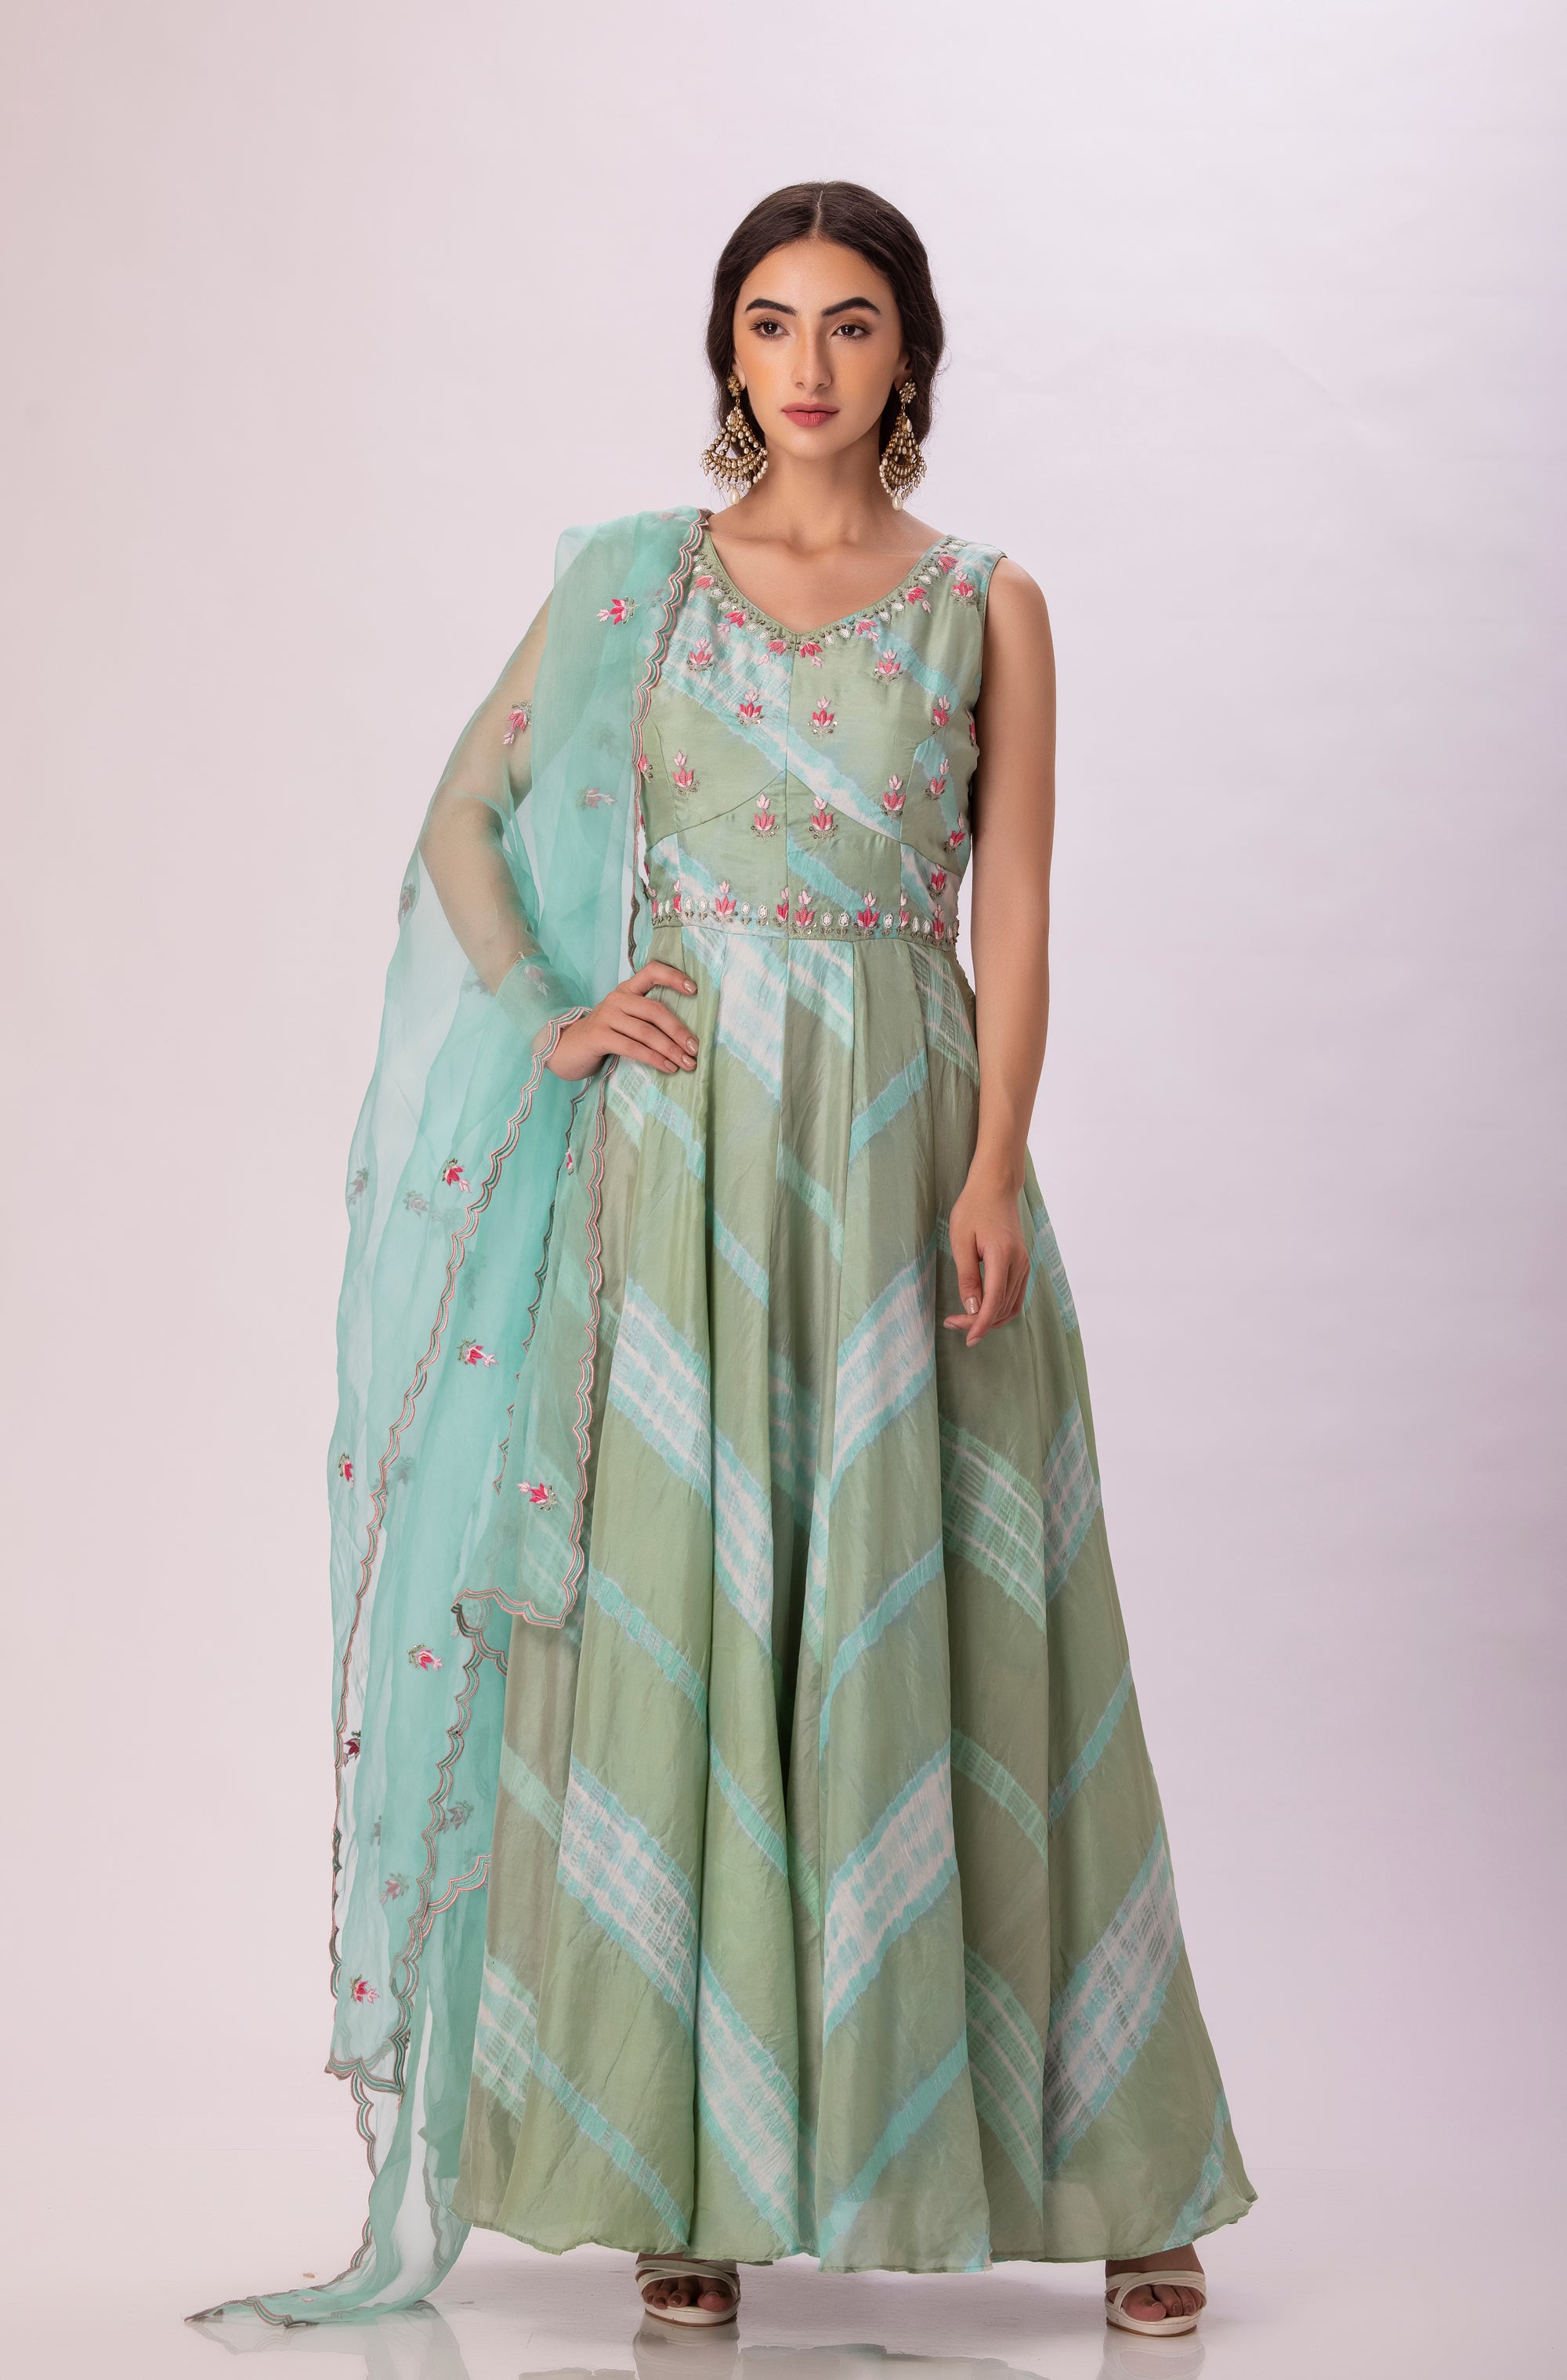 Leheriya dress with dupatta